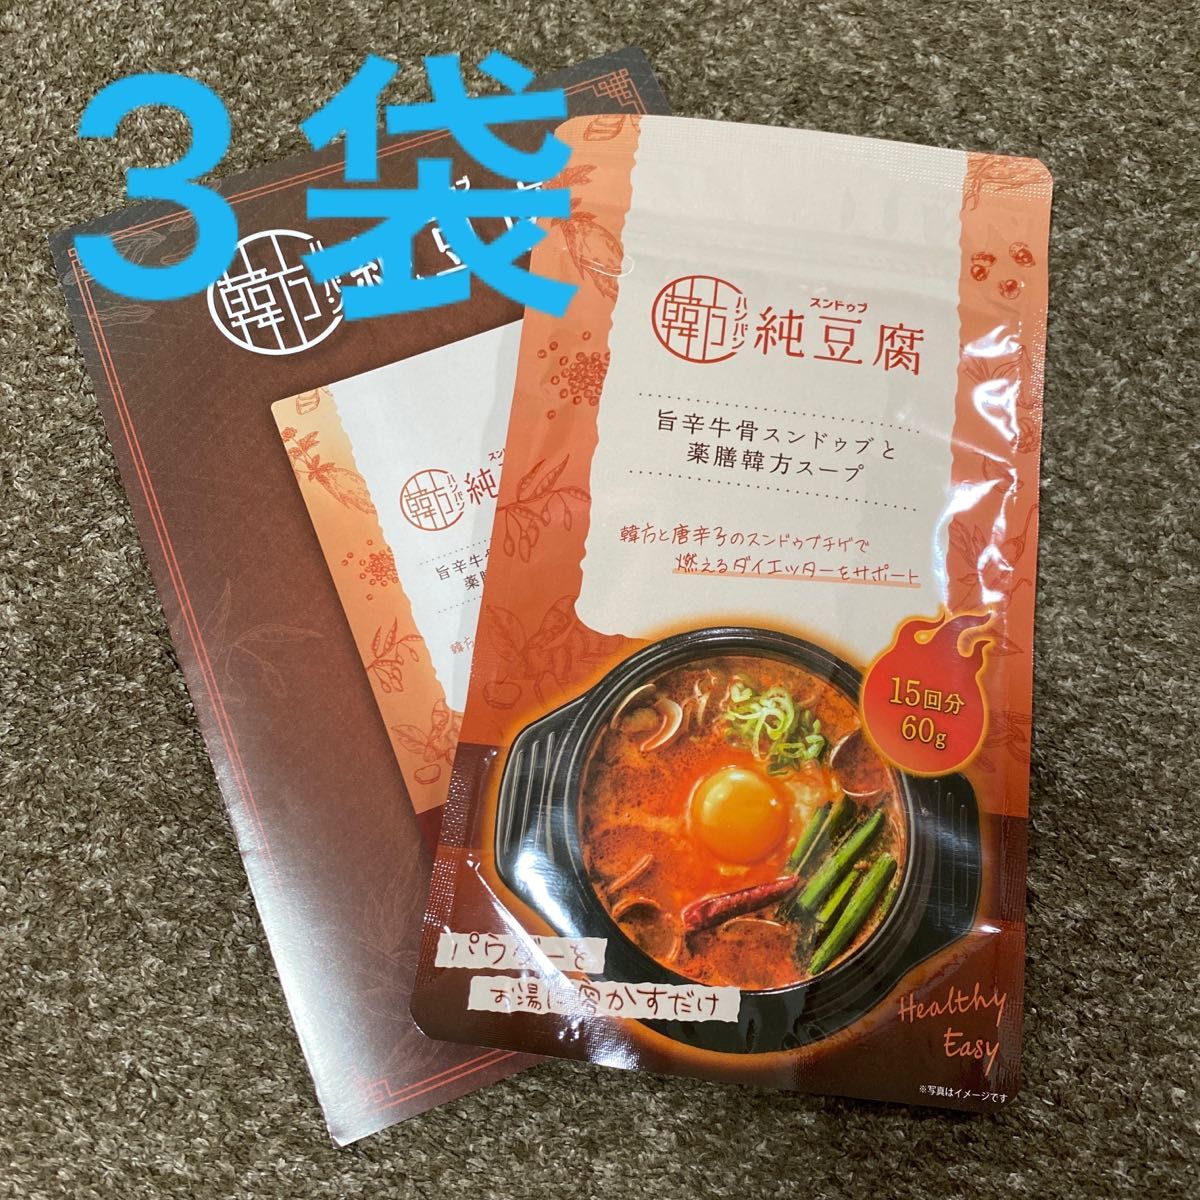 韓方純豆腐　ハンバンスンドゥブ　1袋15回分　60g 韓方スンドゥブ 3袋セット 新品未使用品